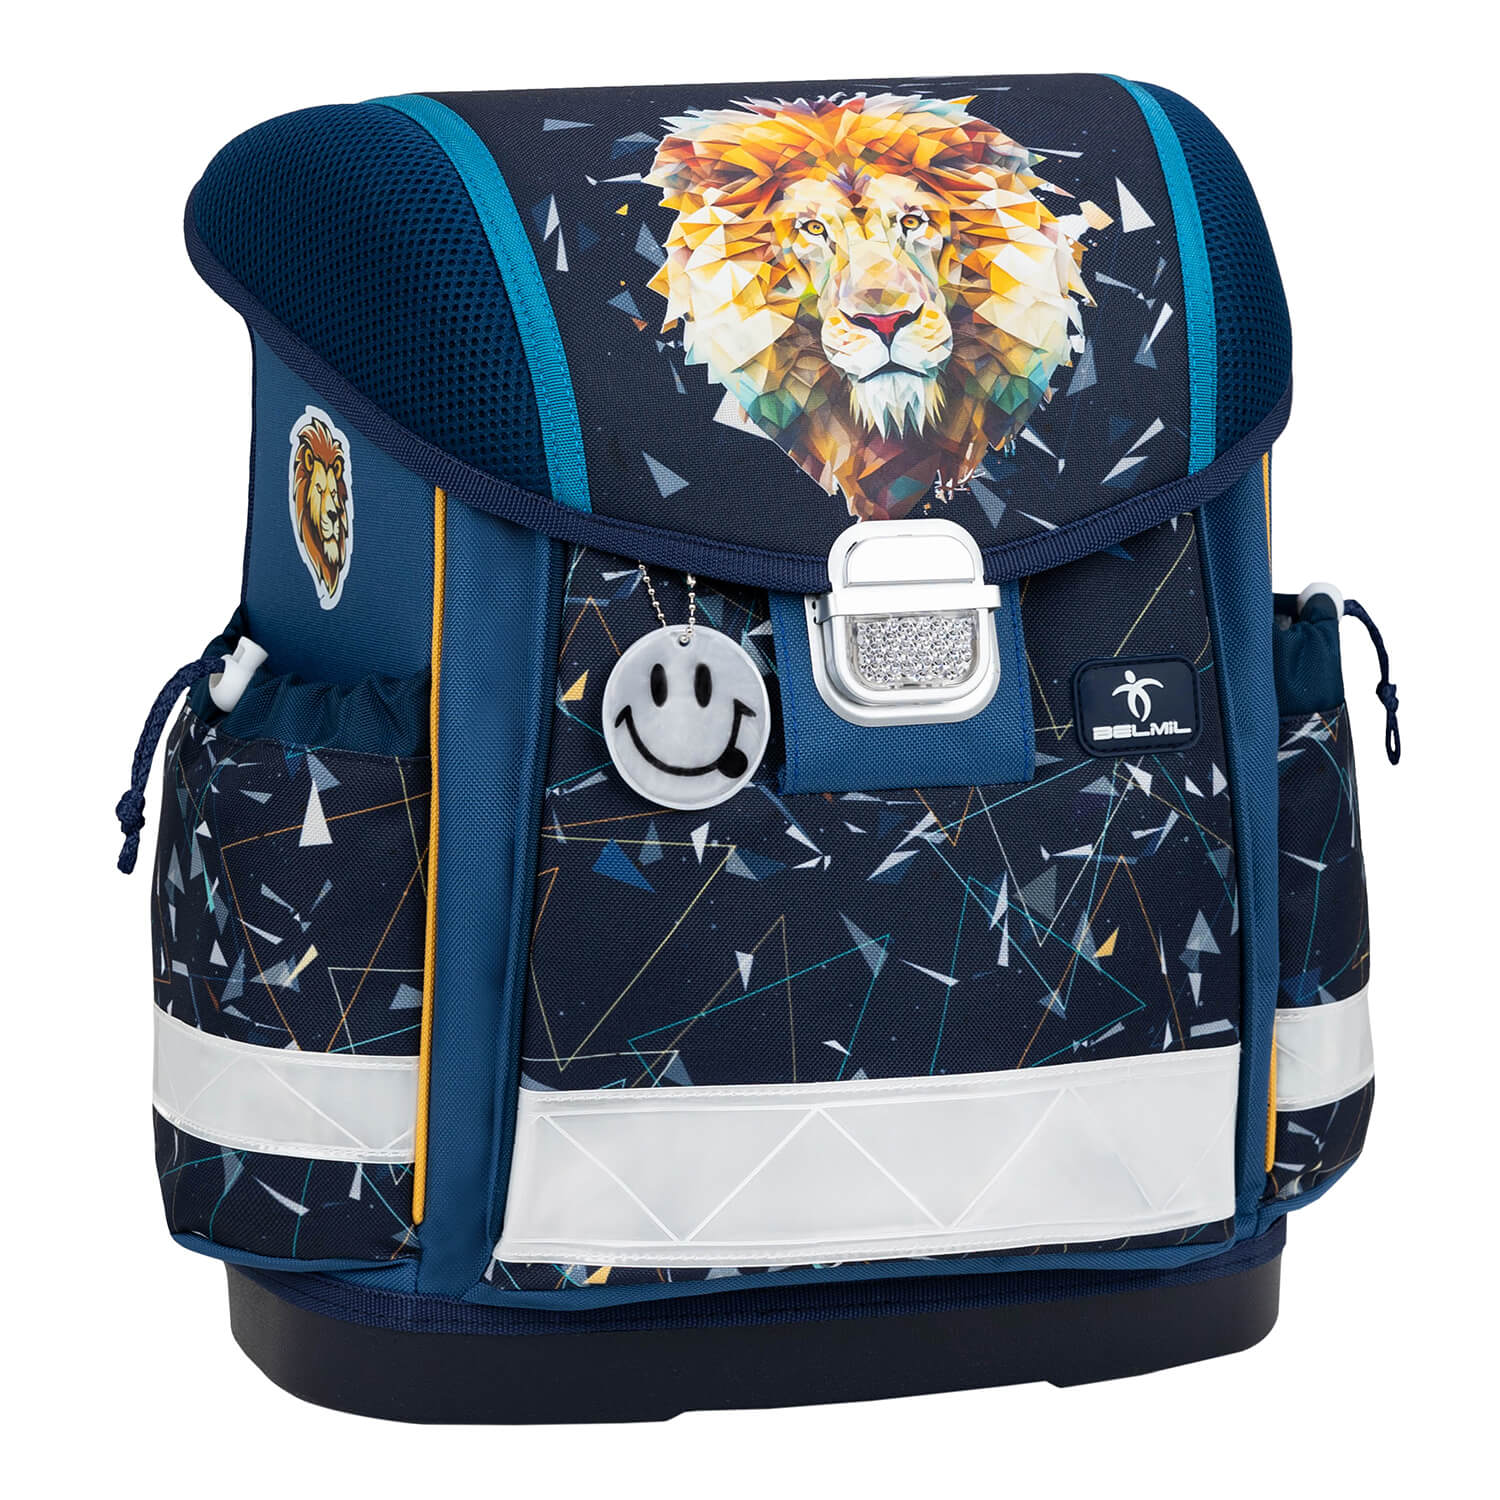 Classy Lion schoolbag set 4 pcs